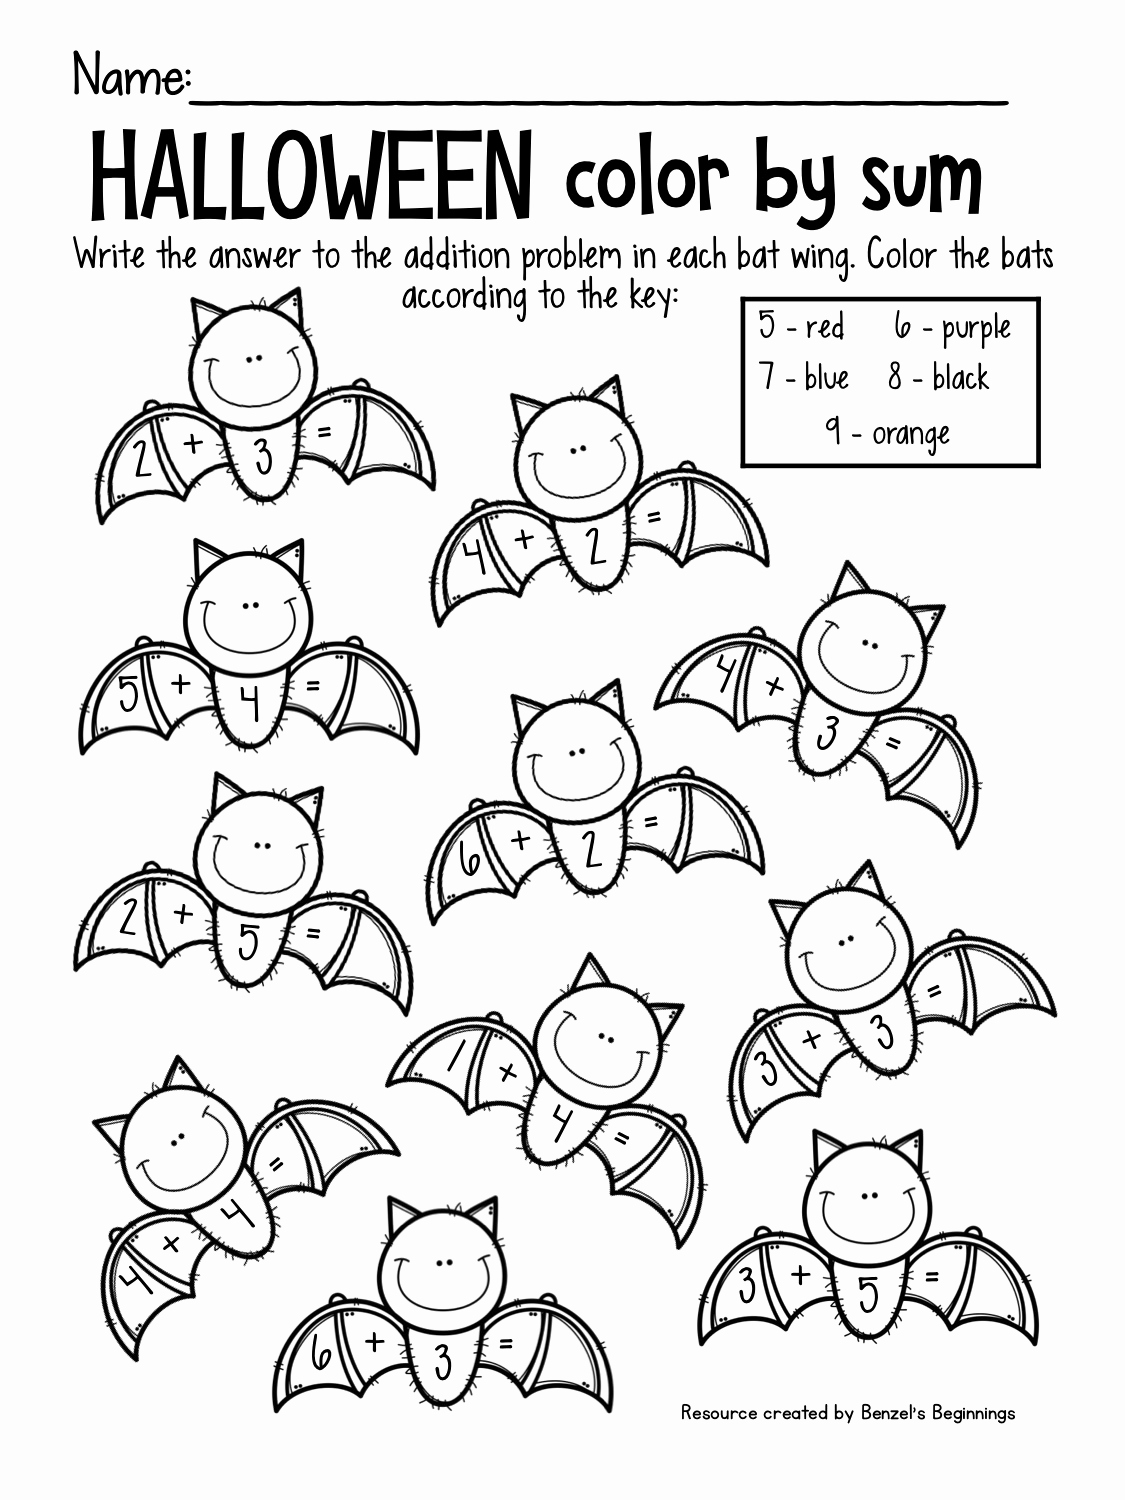 Free Kindergarten Halloween Worksheets Printable Unique 15 Halloween Activities Worksheets and Printables for